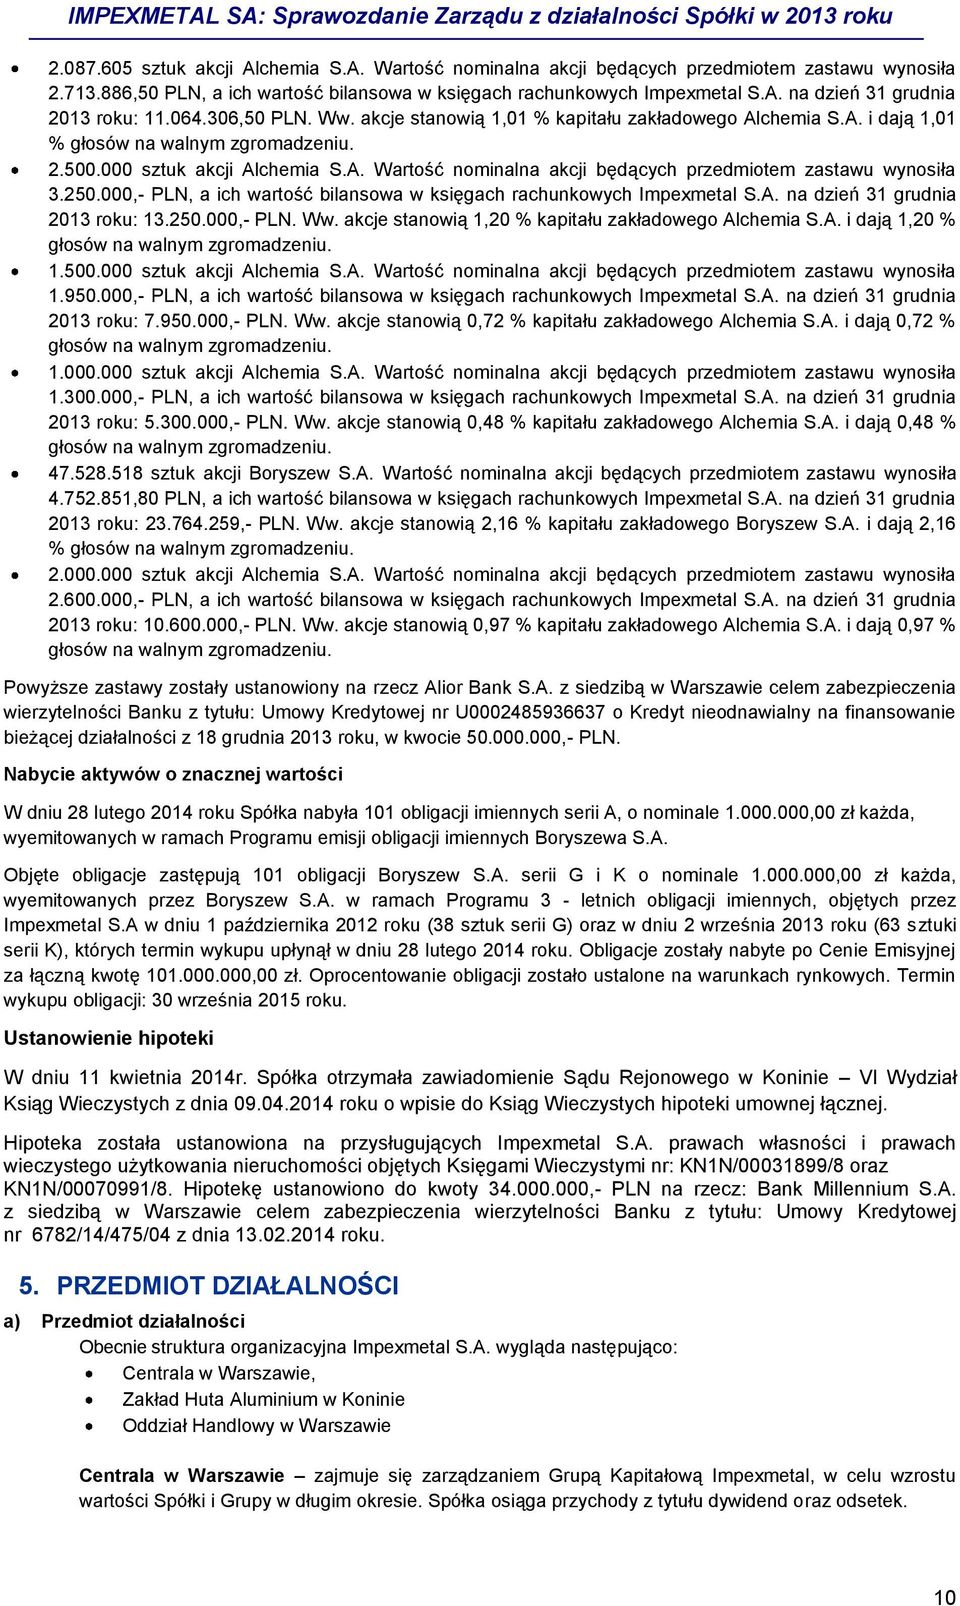 250.000,- PLN, a ich wartość bilansowa w księgach rachunkowych Impexmetal S.A. na dzień 31 grudnia 2013 roku: 13.250.000,- PLN. Ww. akcje stanowią 1,20 % kapitału zakładowego Alchemia S.A. i dają 1,20 % głosów na walnym zgromadzeniu.